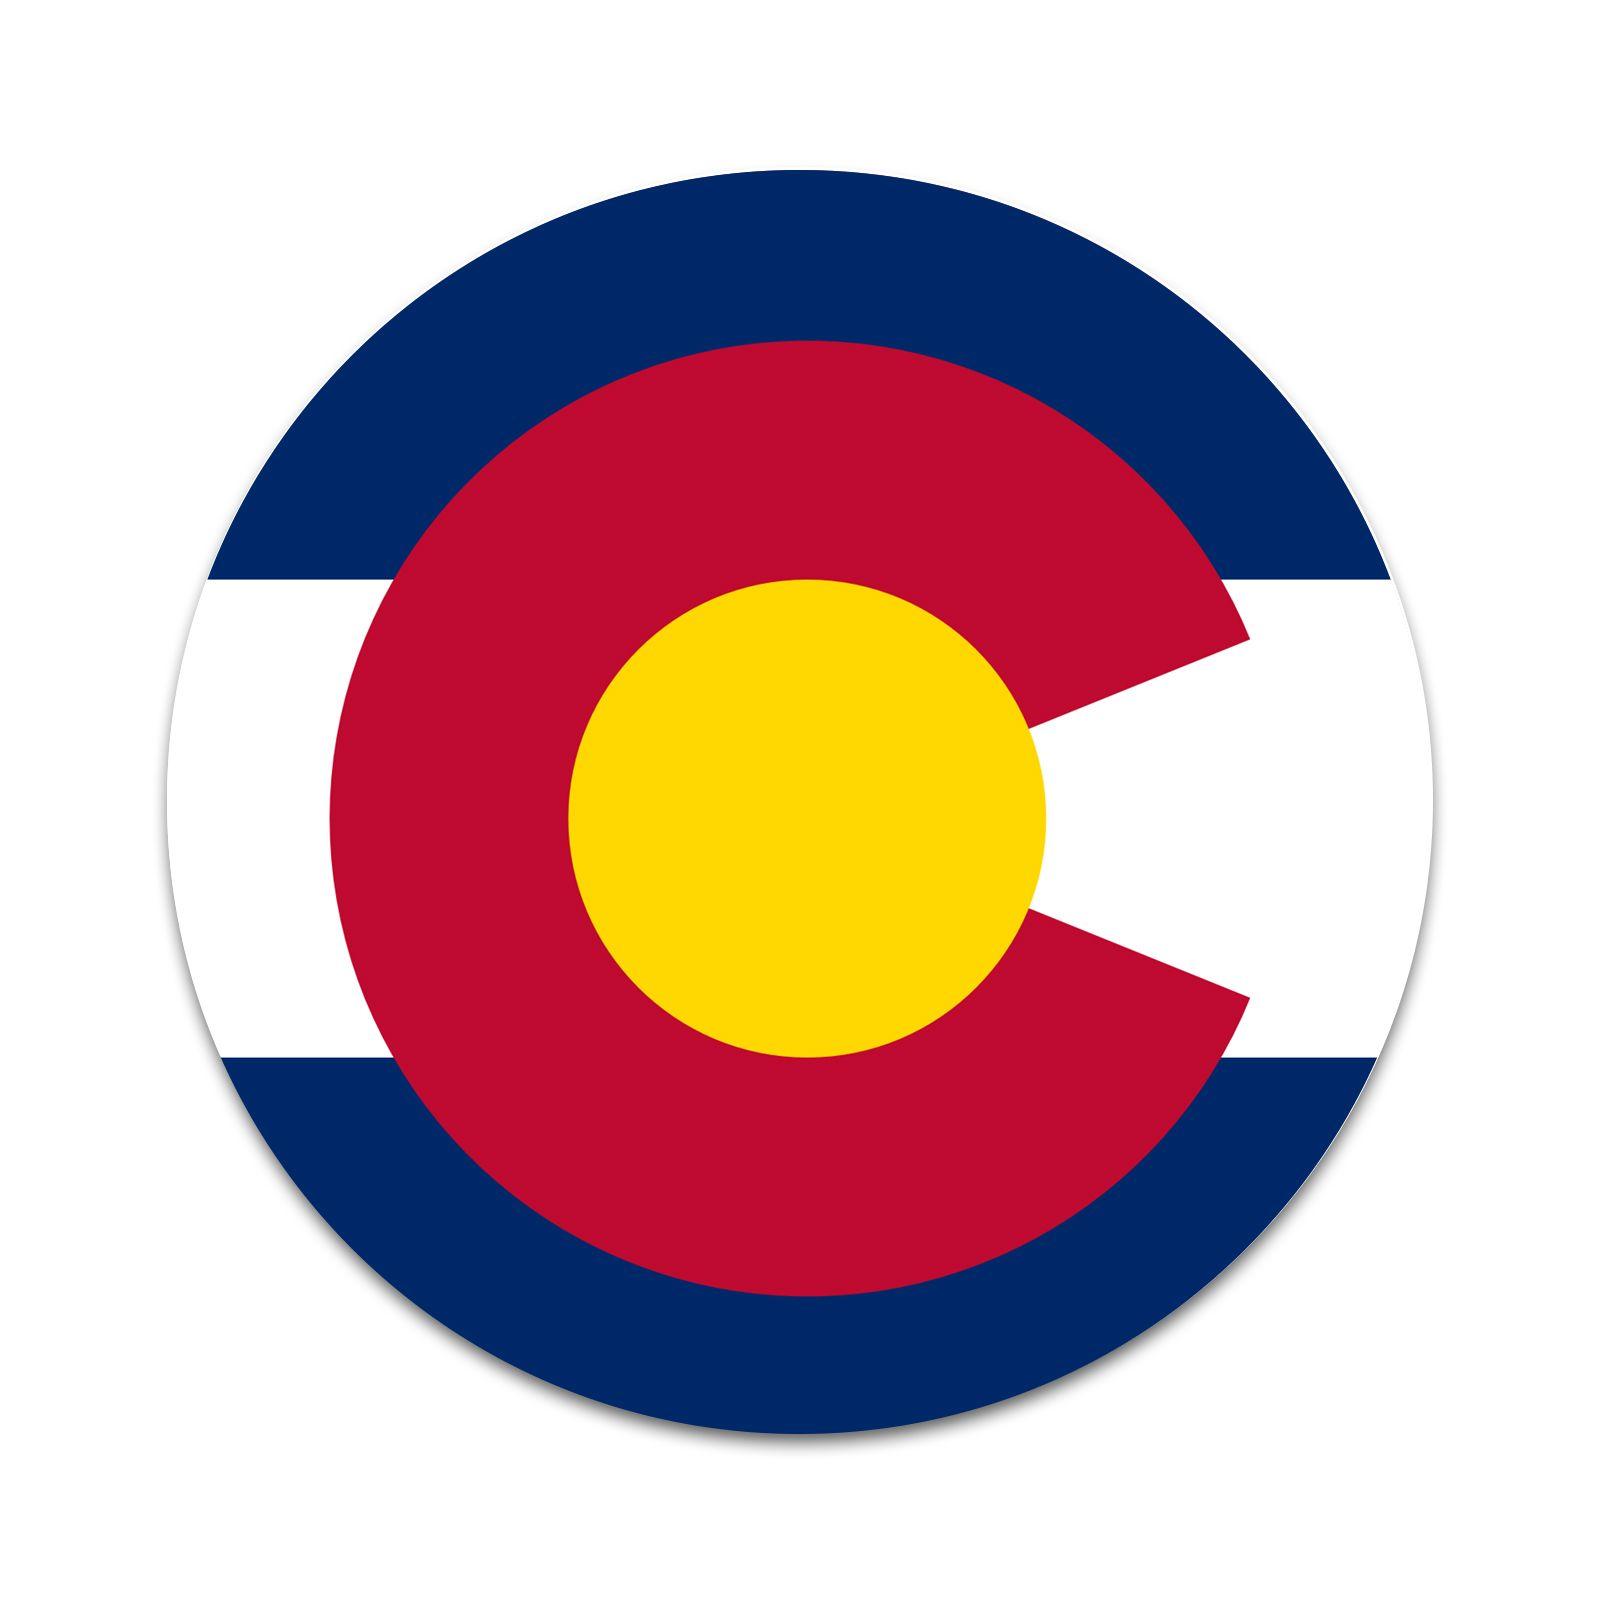 Colorado Logo - Colorado Flag Logo 2 Sticker Set for Pop Grip Stent for Phones and ...